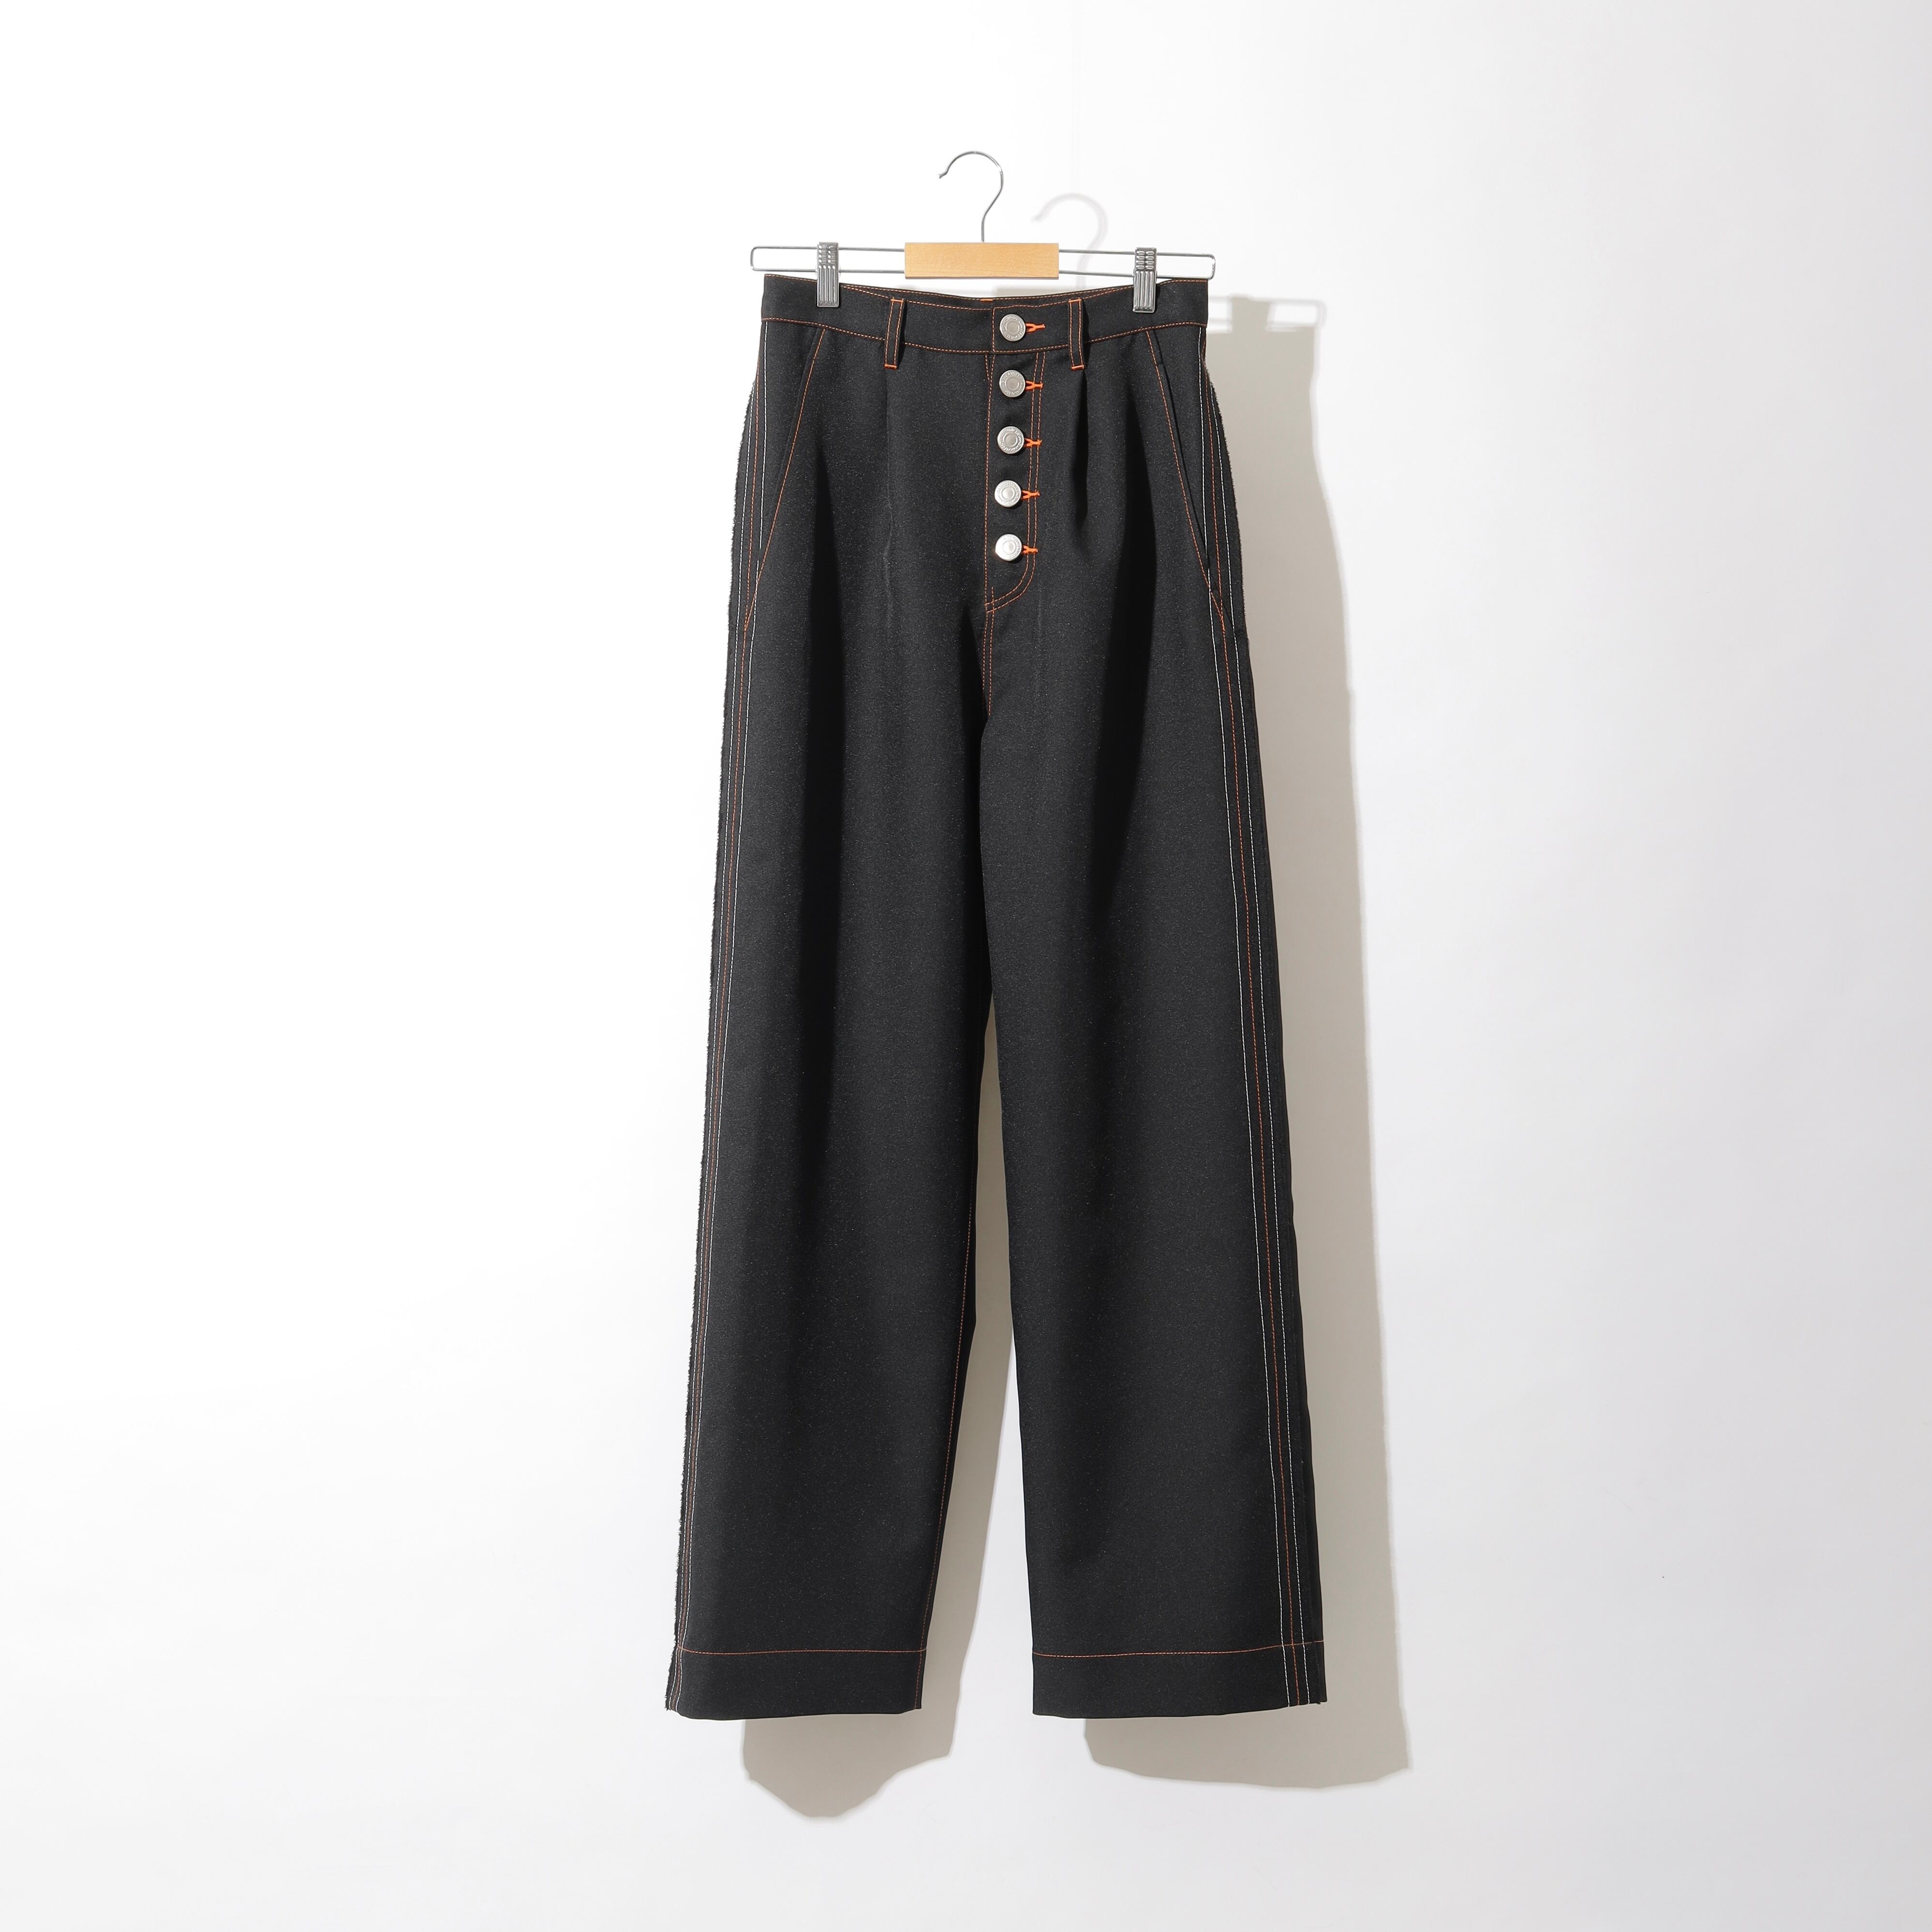 Loile / Side seam long pants